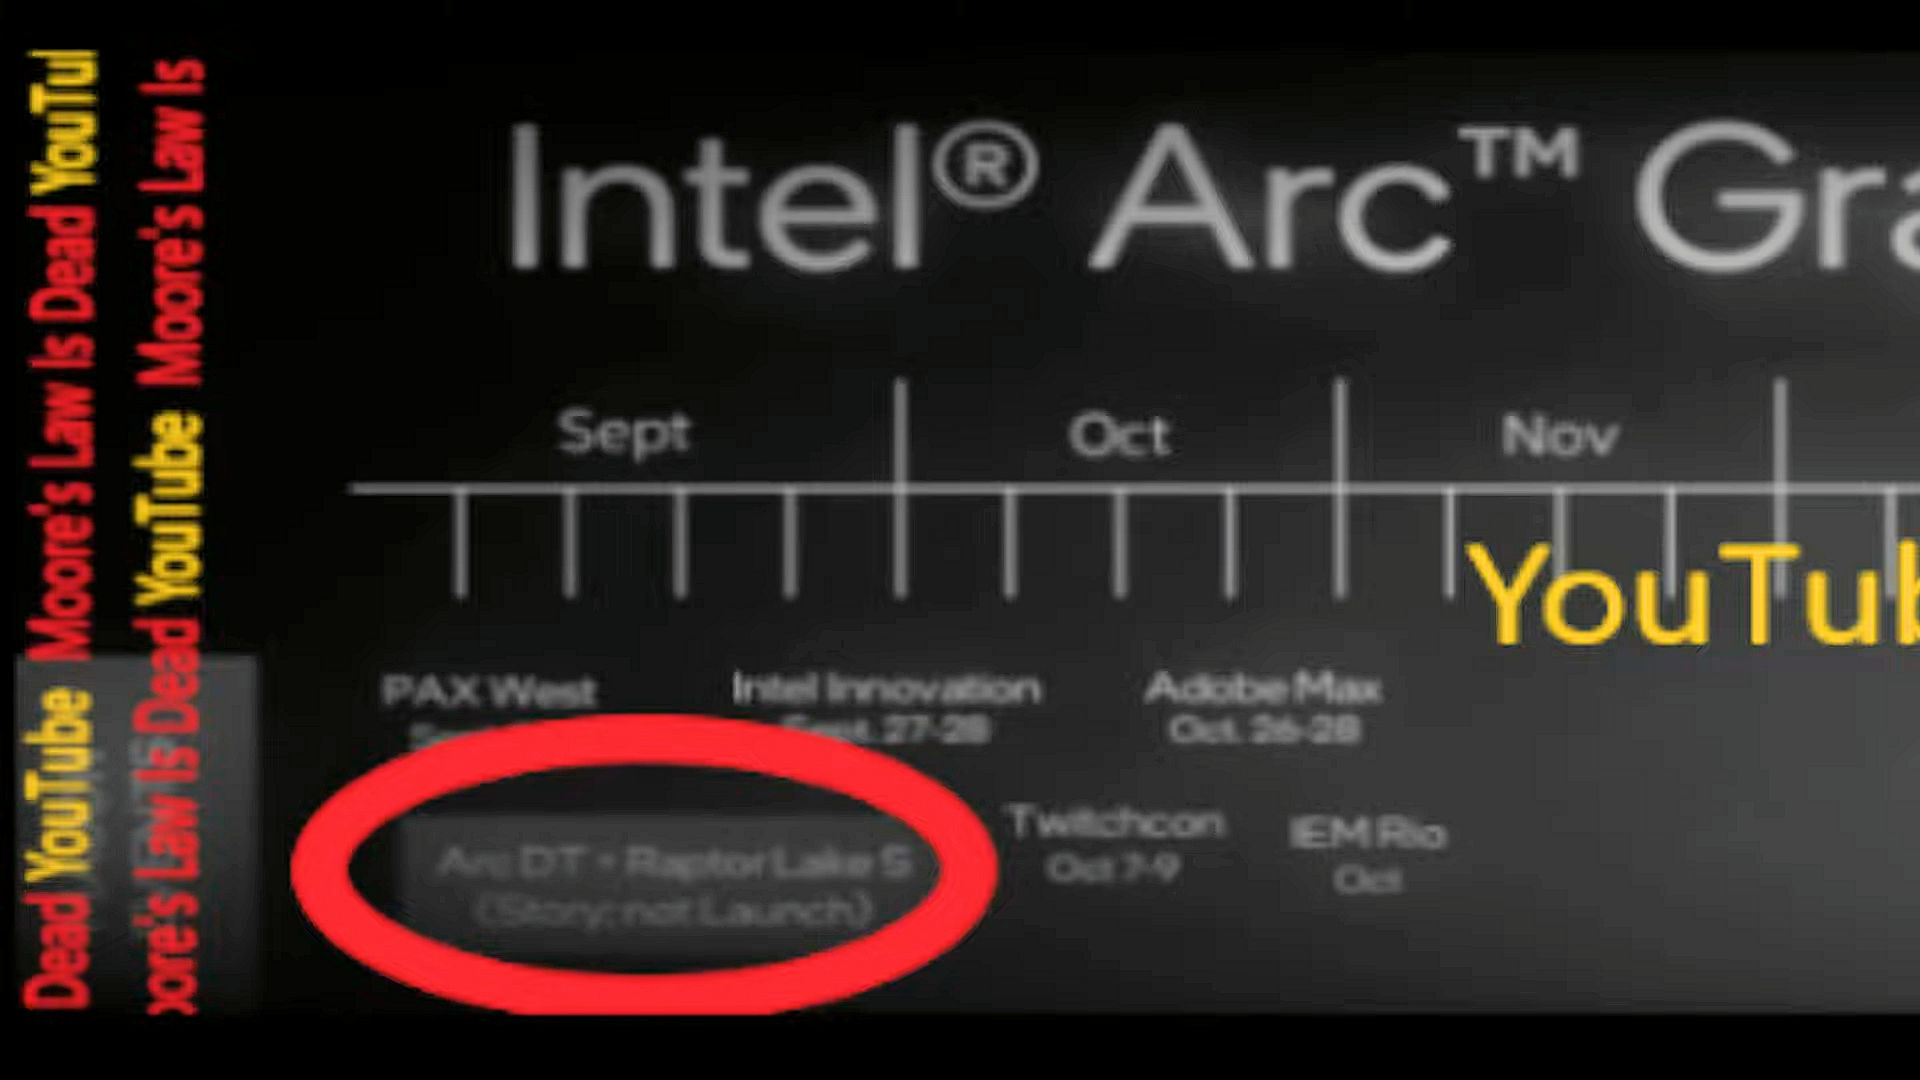 Intel Arc - wyciek dokumentów potwierdza opóźnienia. MLiD wpsomina o poważnej wadzie konstrukcyjnej